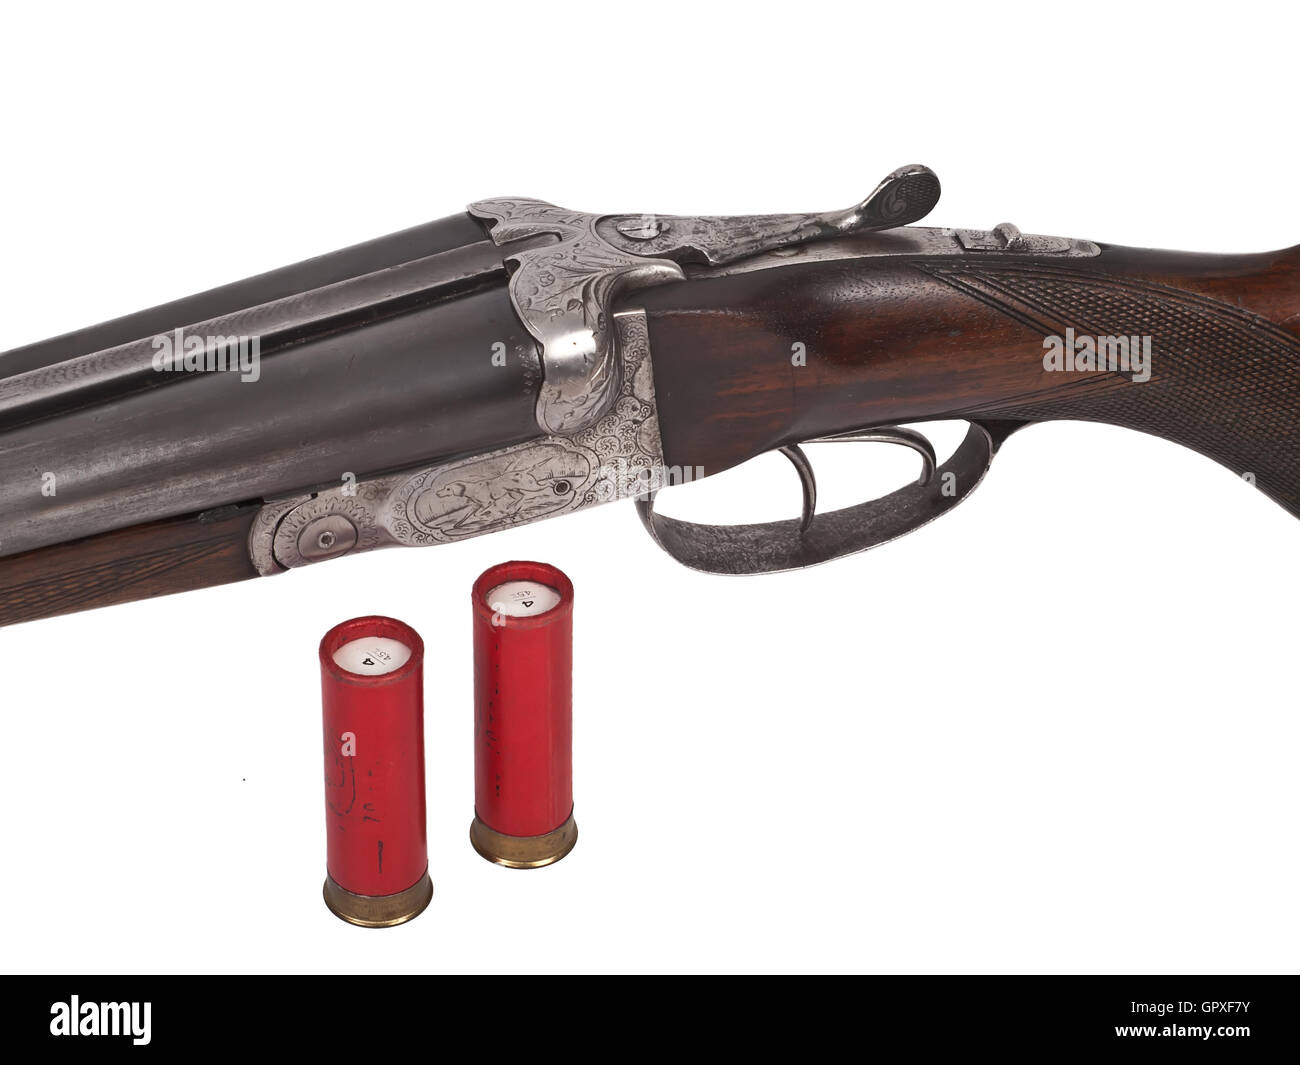 Double barrel gun Banque d'images détourées - Alamy